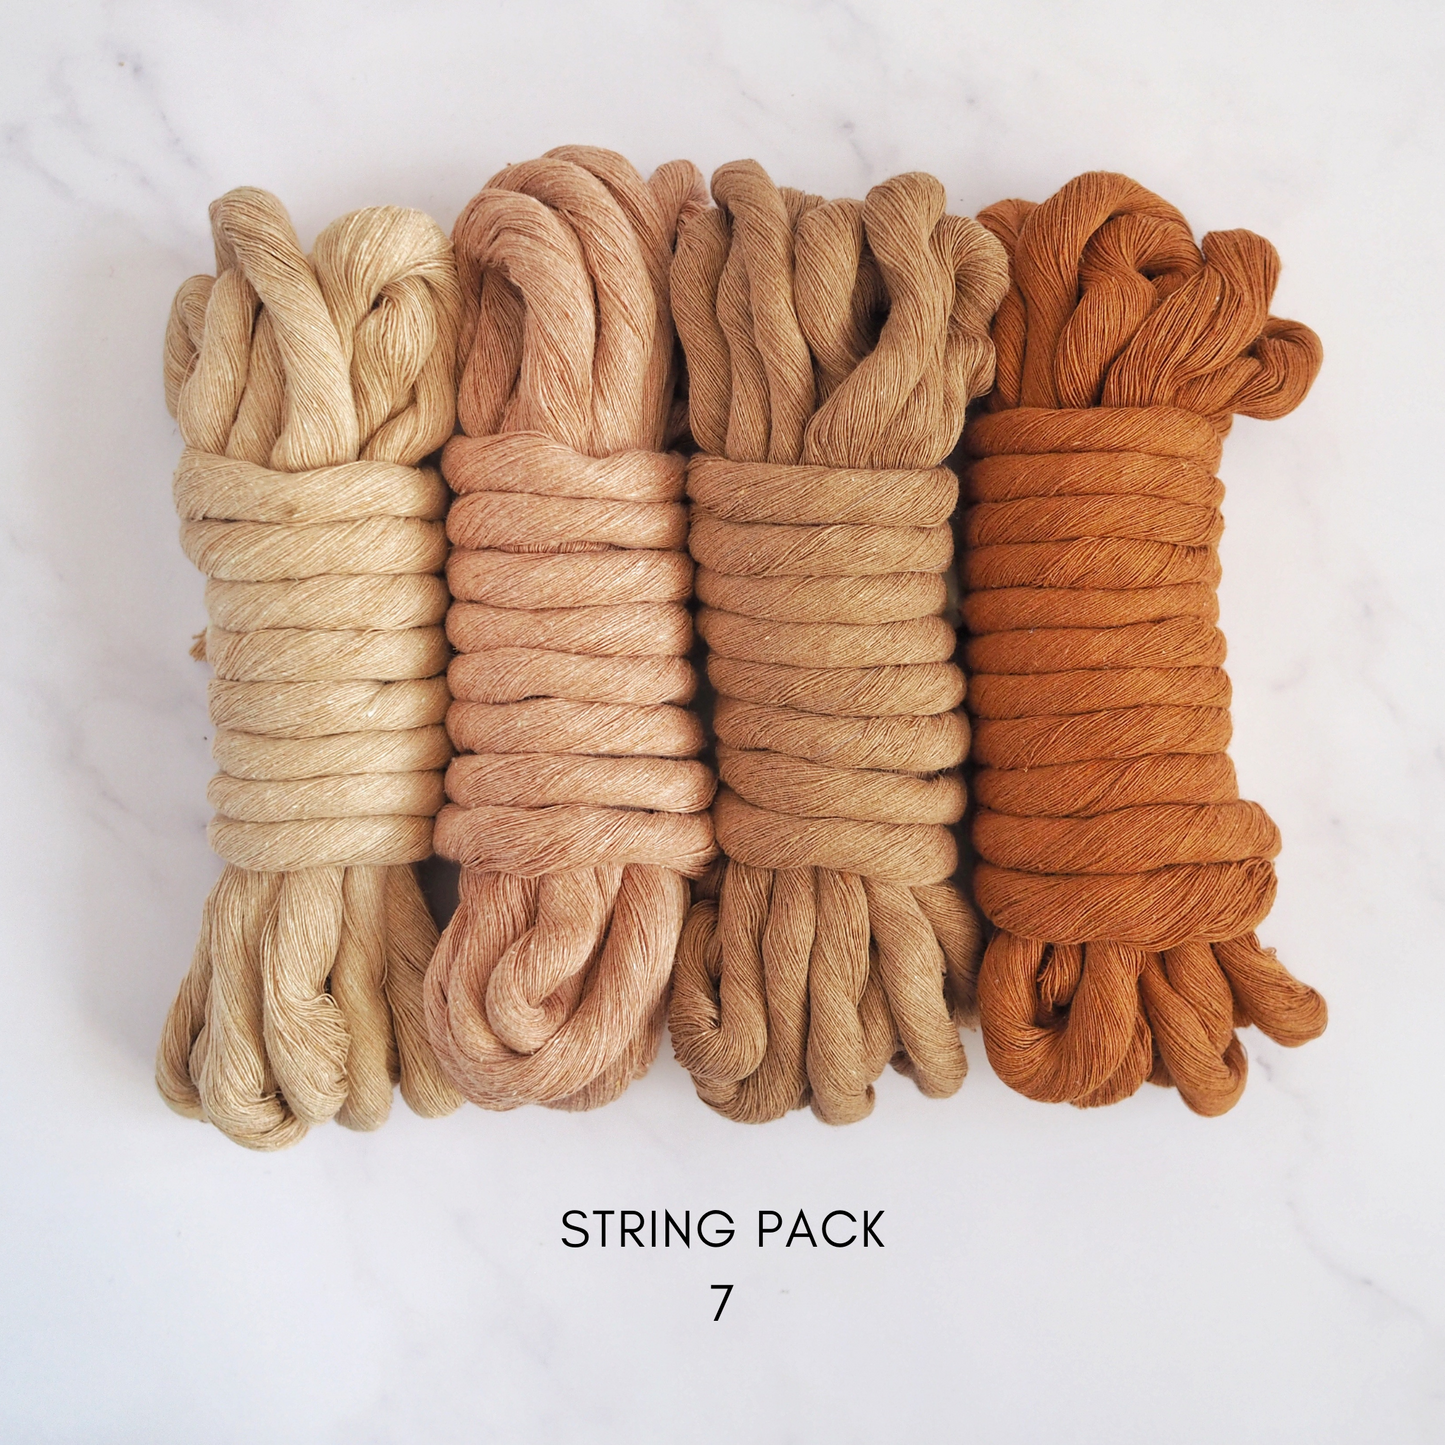 12mm String | Pack 7 The Joyful Studio